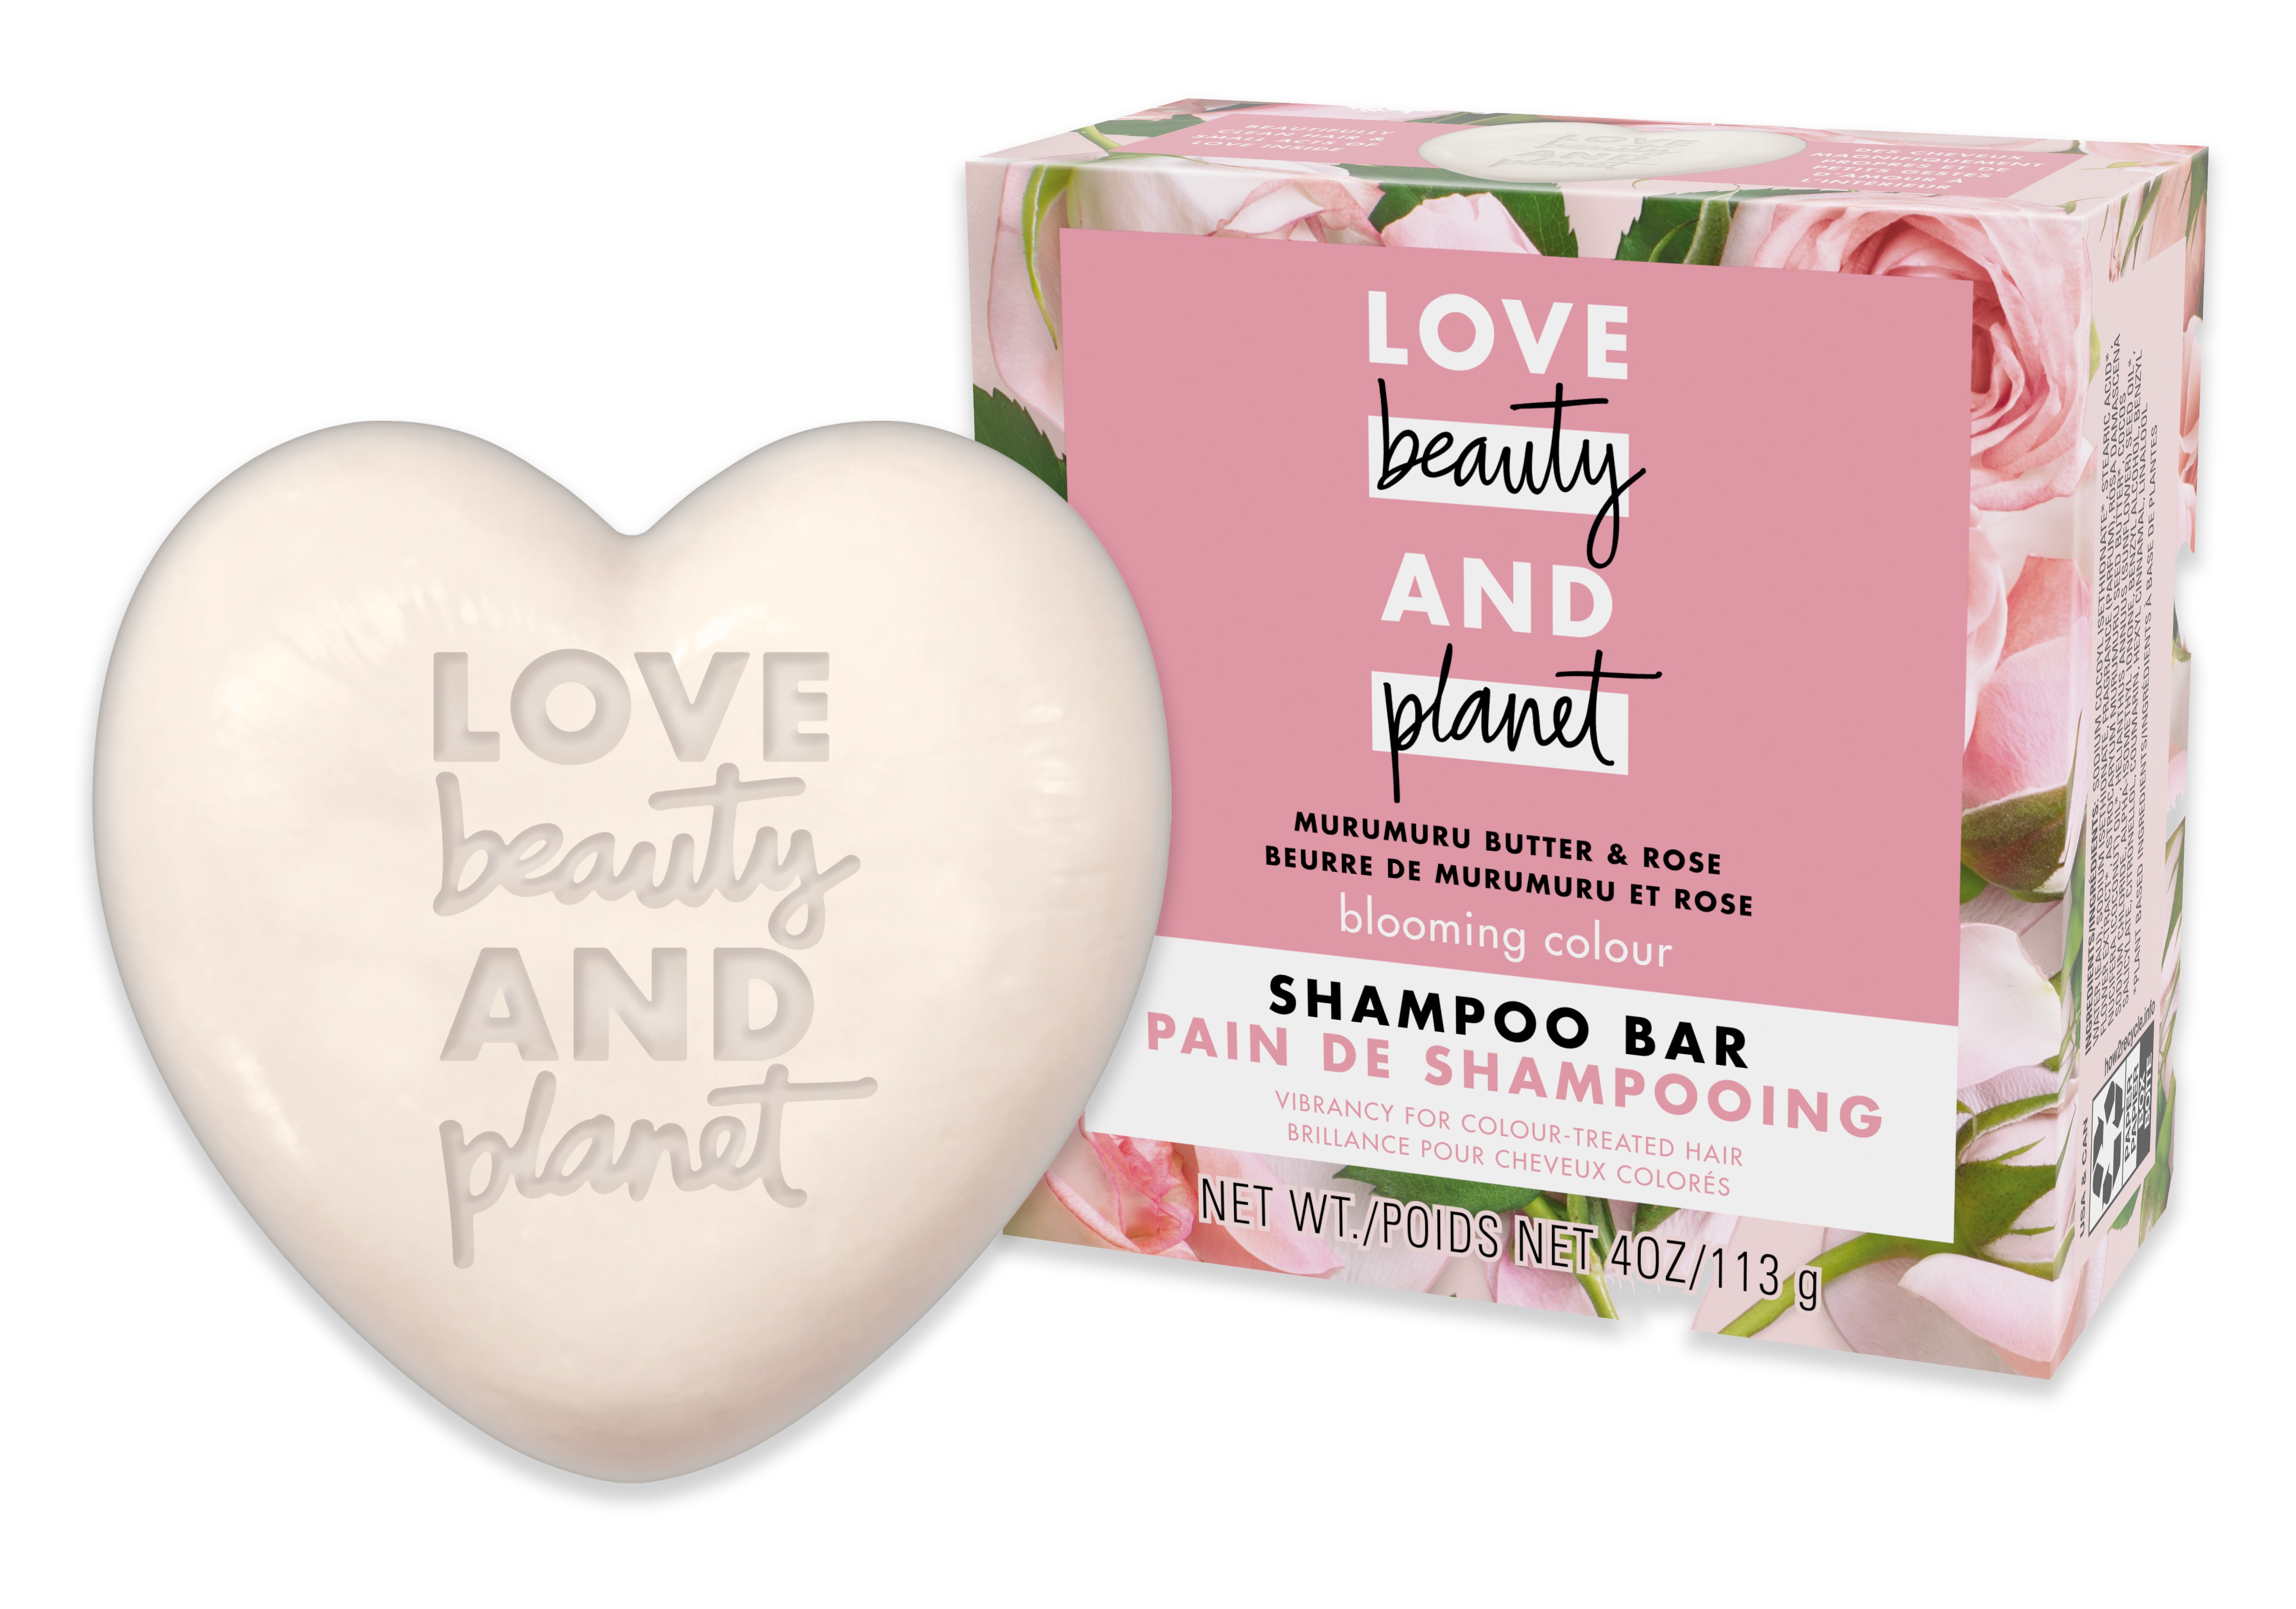 Love beauty and planet Shampoo Bar Murumuru Butter & Rose